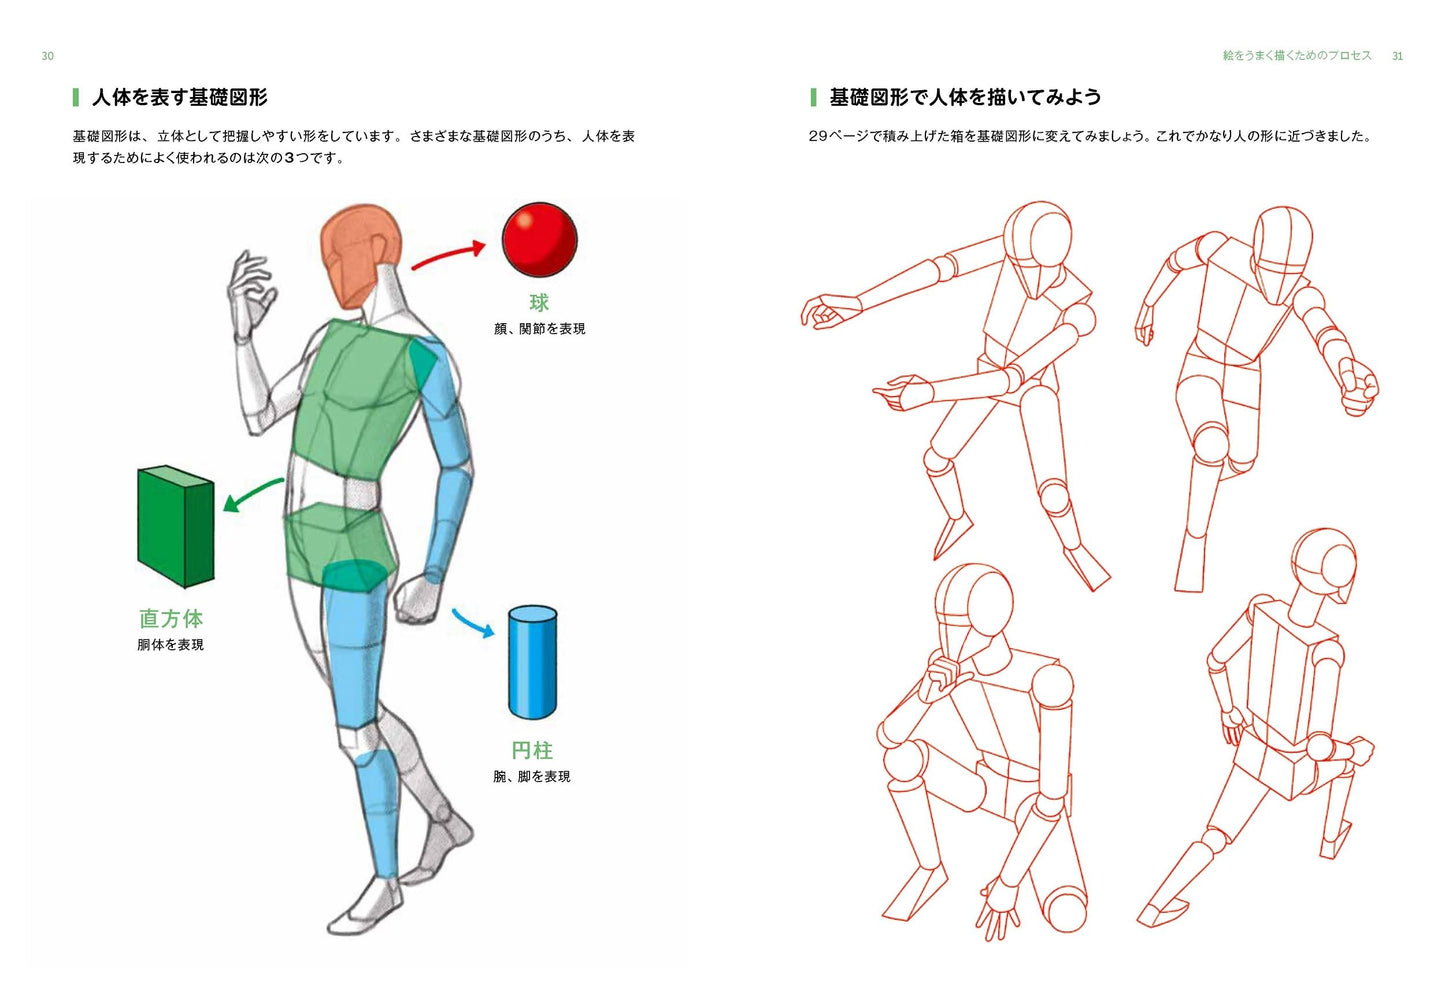 U Yongu's Human Body Drawing Class